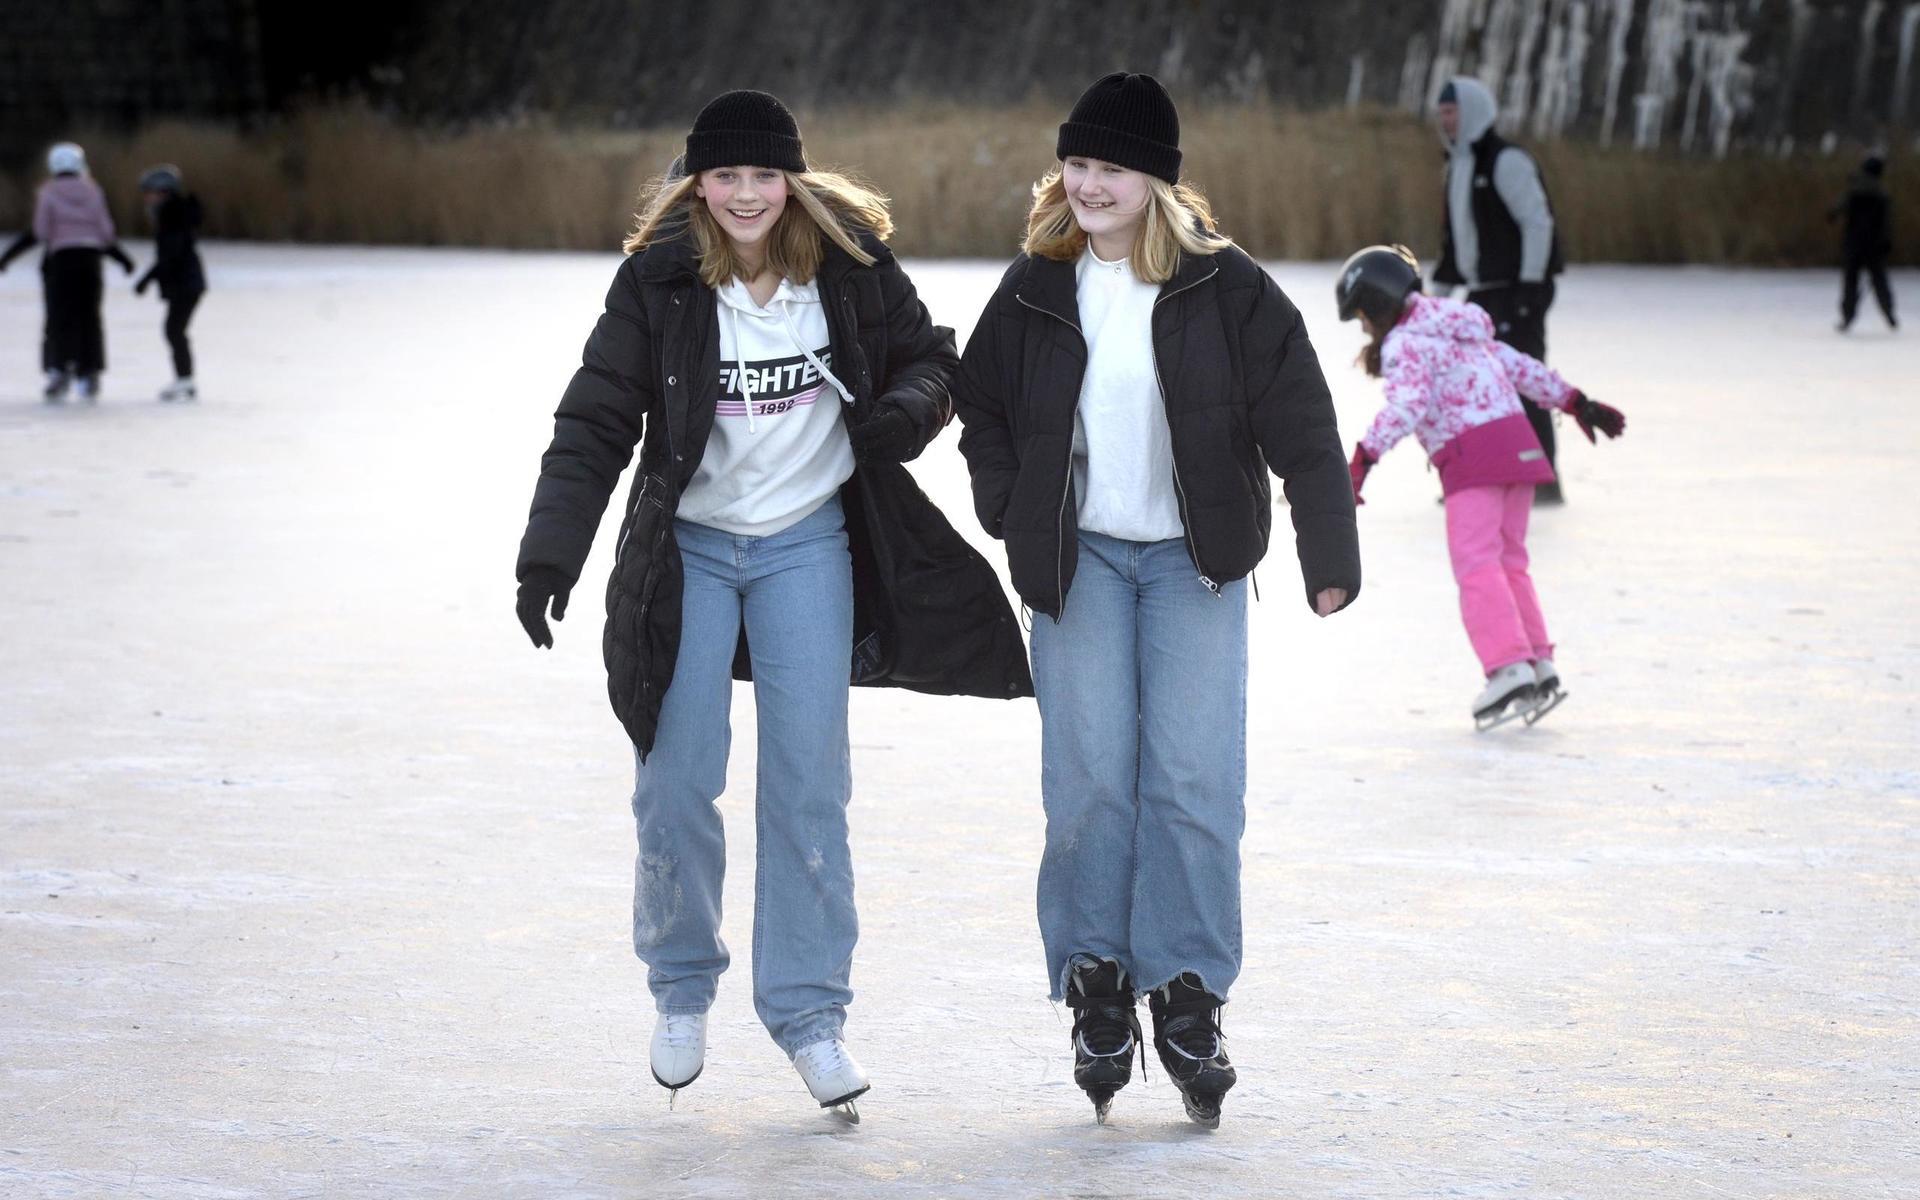 Stephanie Haknert och Amanda Elisson åkte skridskor på vallgraven.